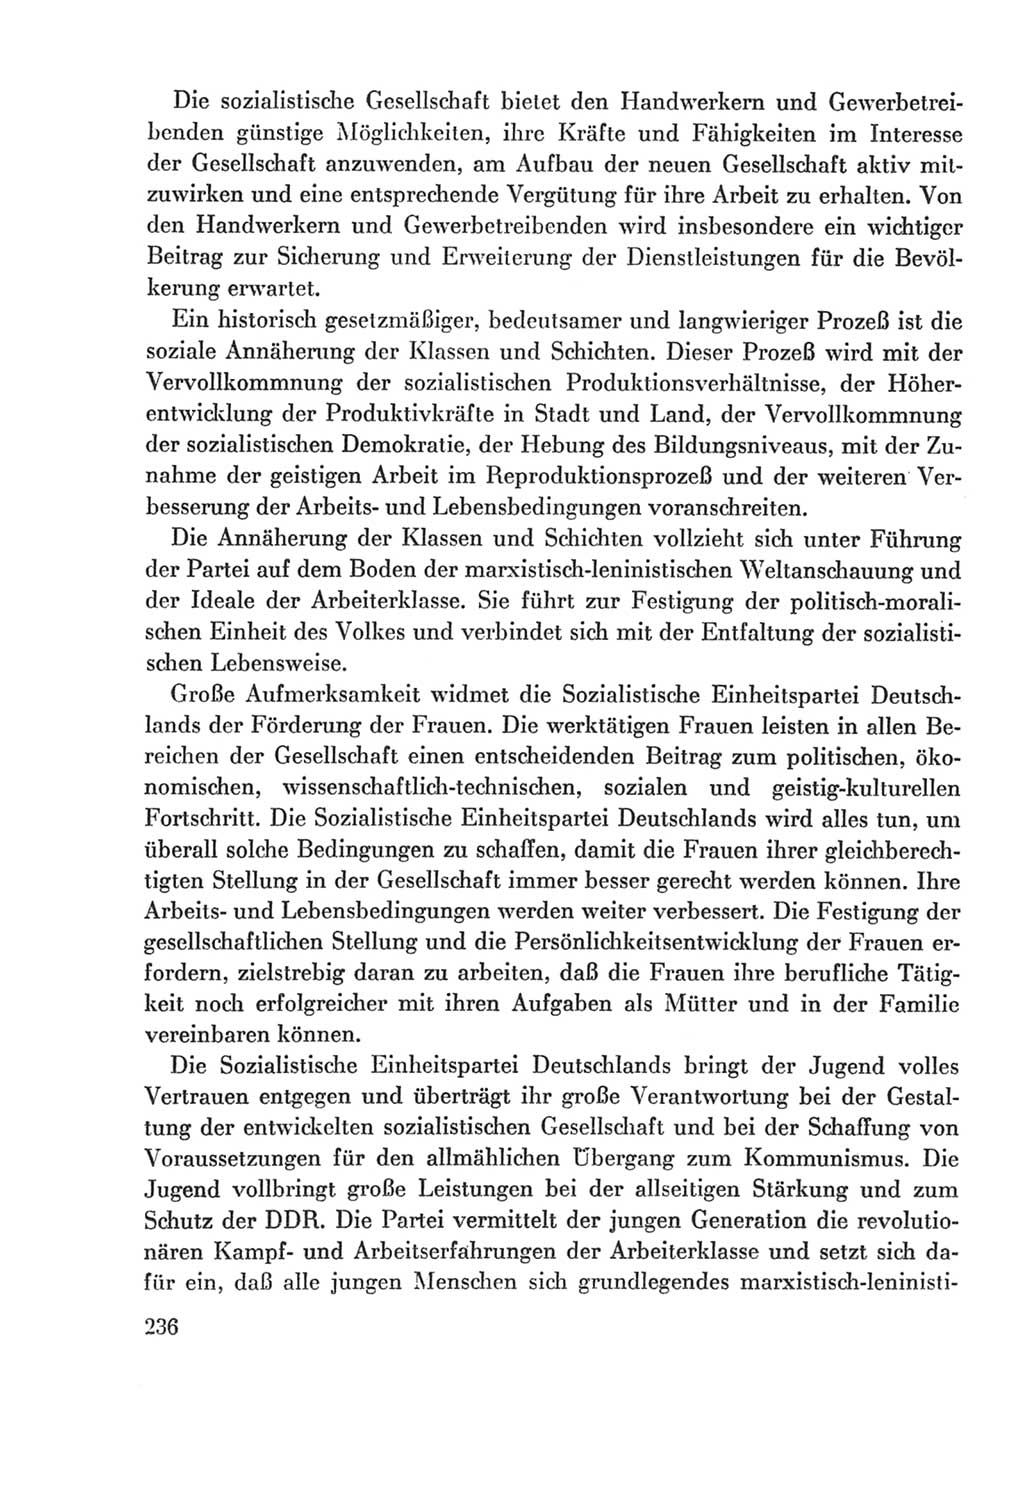 Protokoll der Verhandlungen des Ⅸ. Parteitages der Sozialistischen Einheitspartei Deutschlands (SED) [Deutsche Demokratische Republik (DDR)] 1976, Band 2, Seite 236 (Prot. Verh. Ⅸ. PT SED DDR 1976, Bd. 2, S. 236)